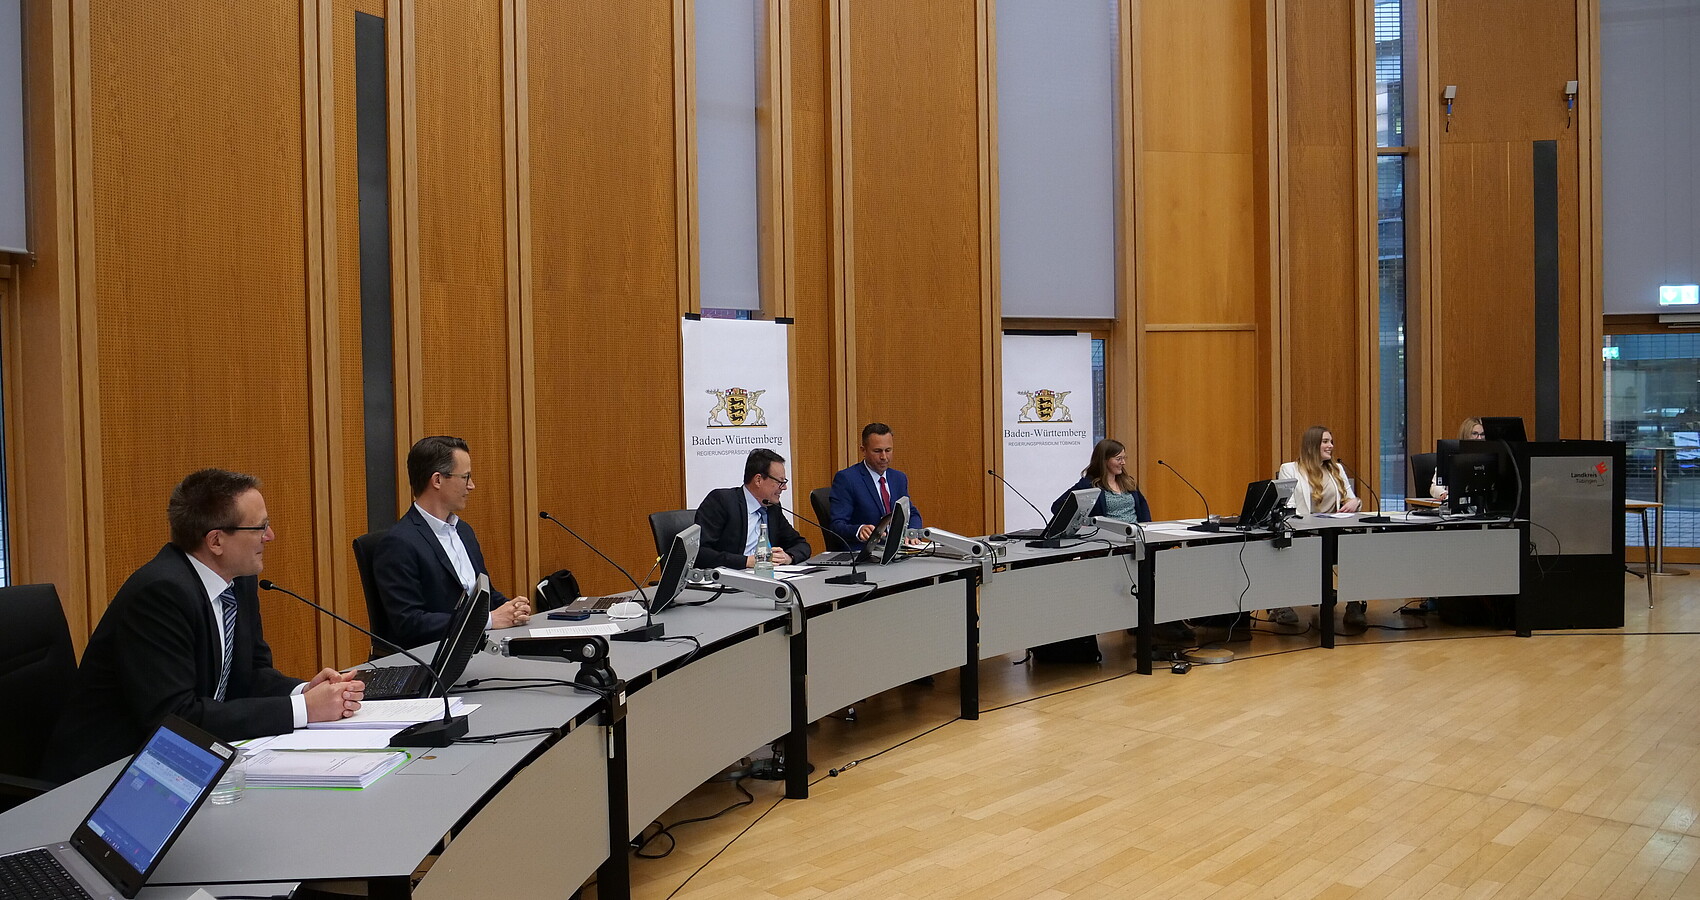 Regierungspräsident Klaus Tappeser und Vertreterinnen und Vertreter der Abteilung 4 Mobilität, Verkehr Straßen sitzen an einem runden Plenumstisch